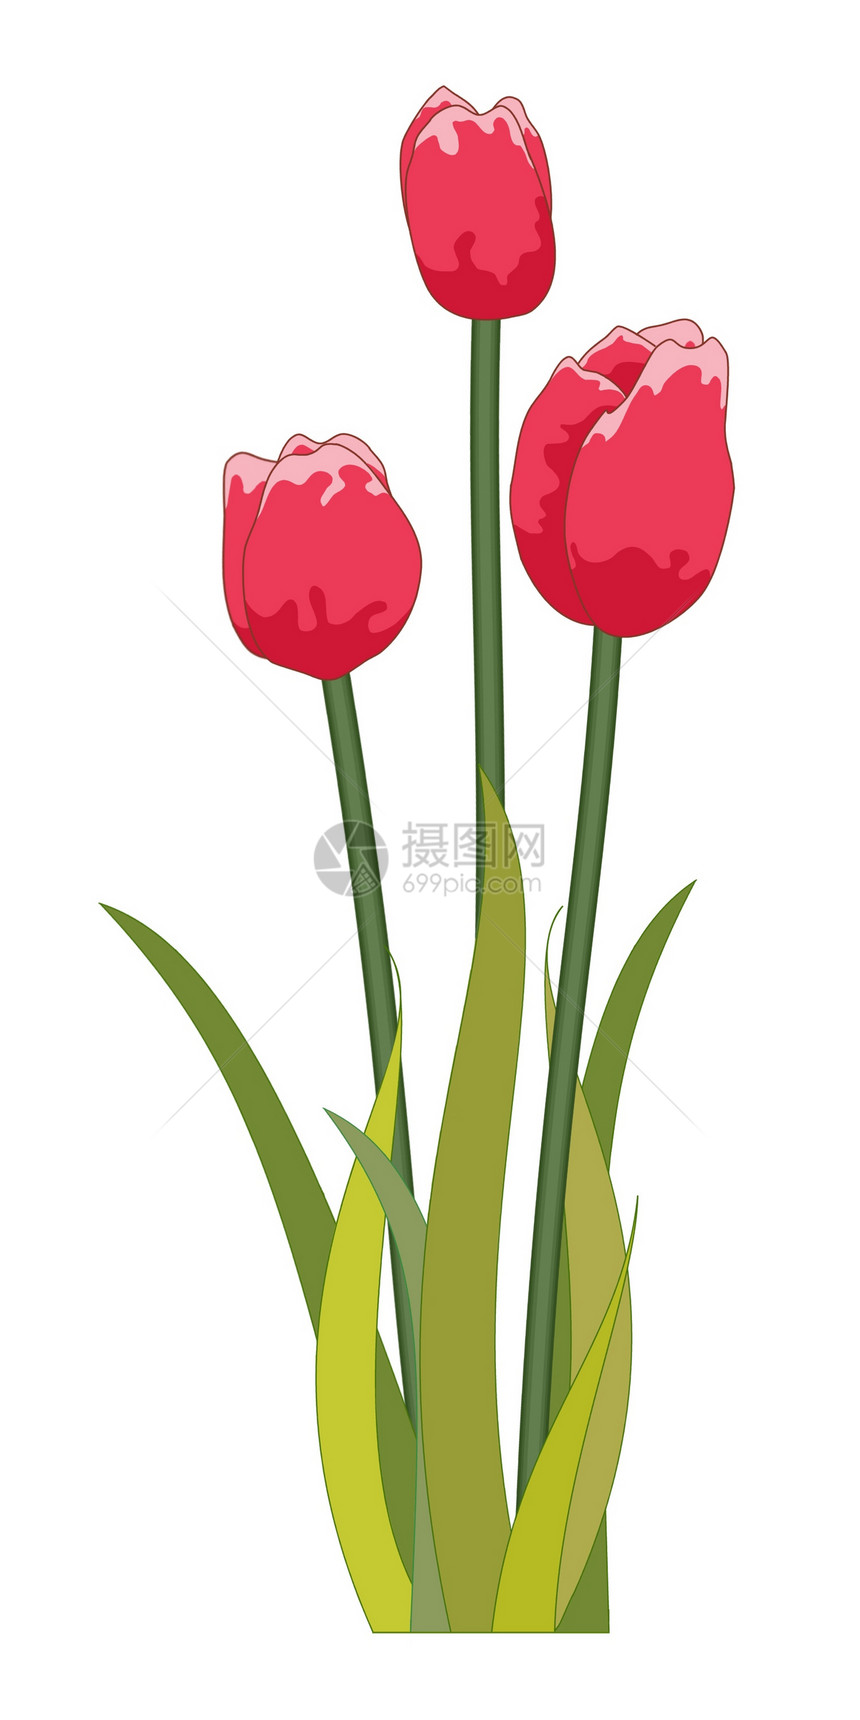 红色郁金香漫画叶子绘画插图植物群树叶花朵火鸡卡通片图片